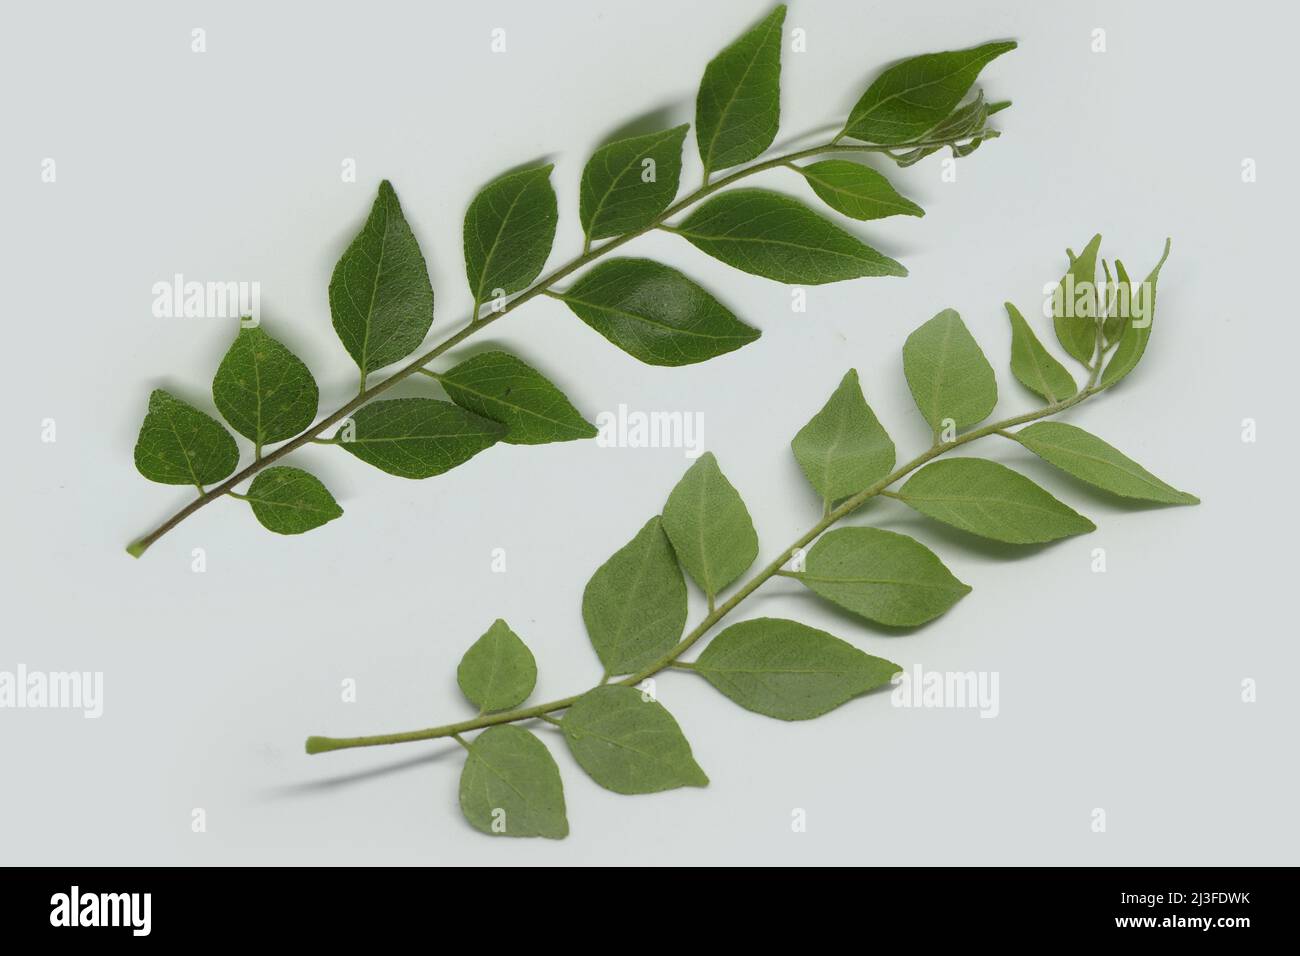 Curry Leaf Tree Immagini e Fotos Stock - Alamy